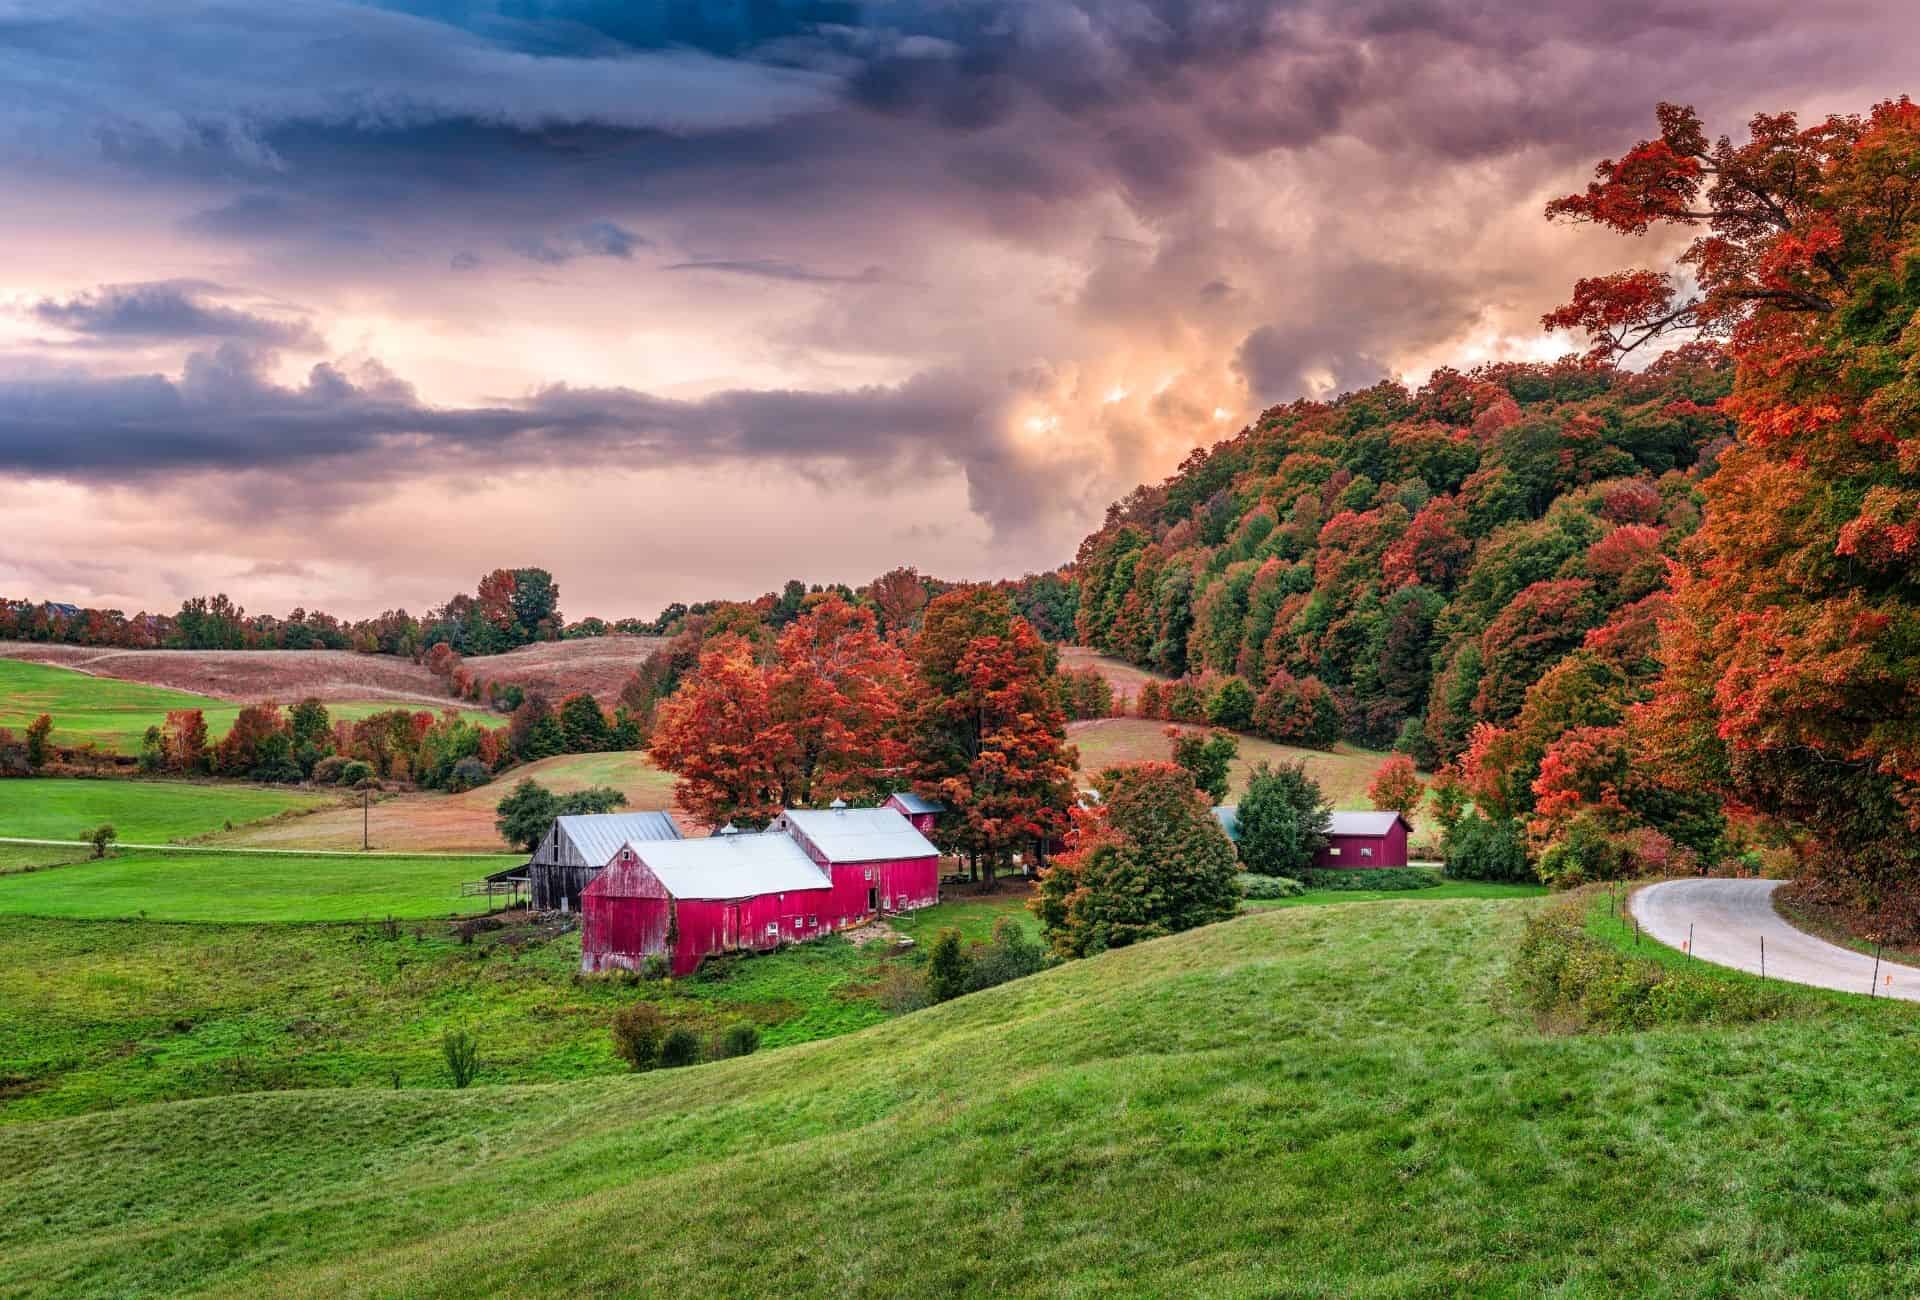 Vermont in autumn